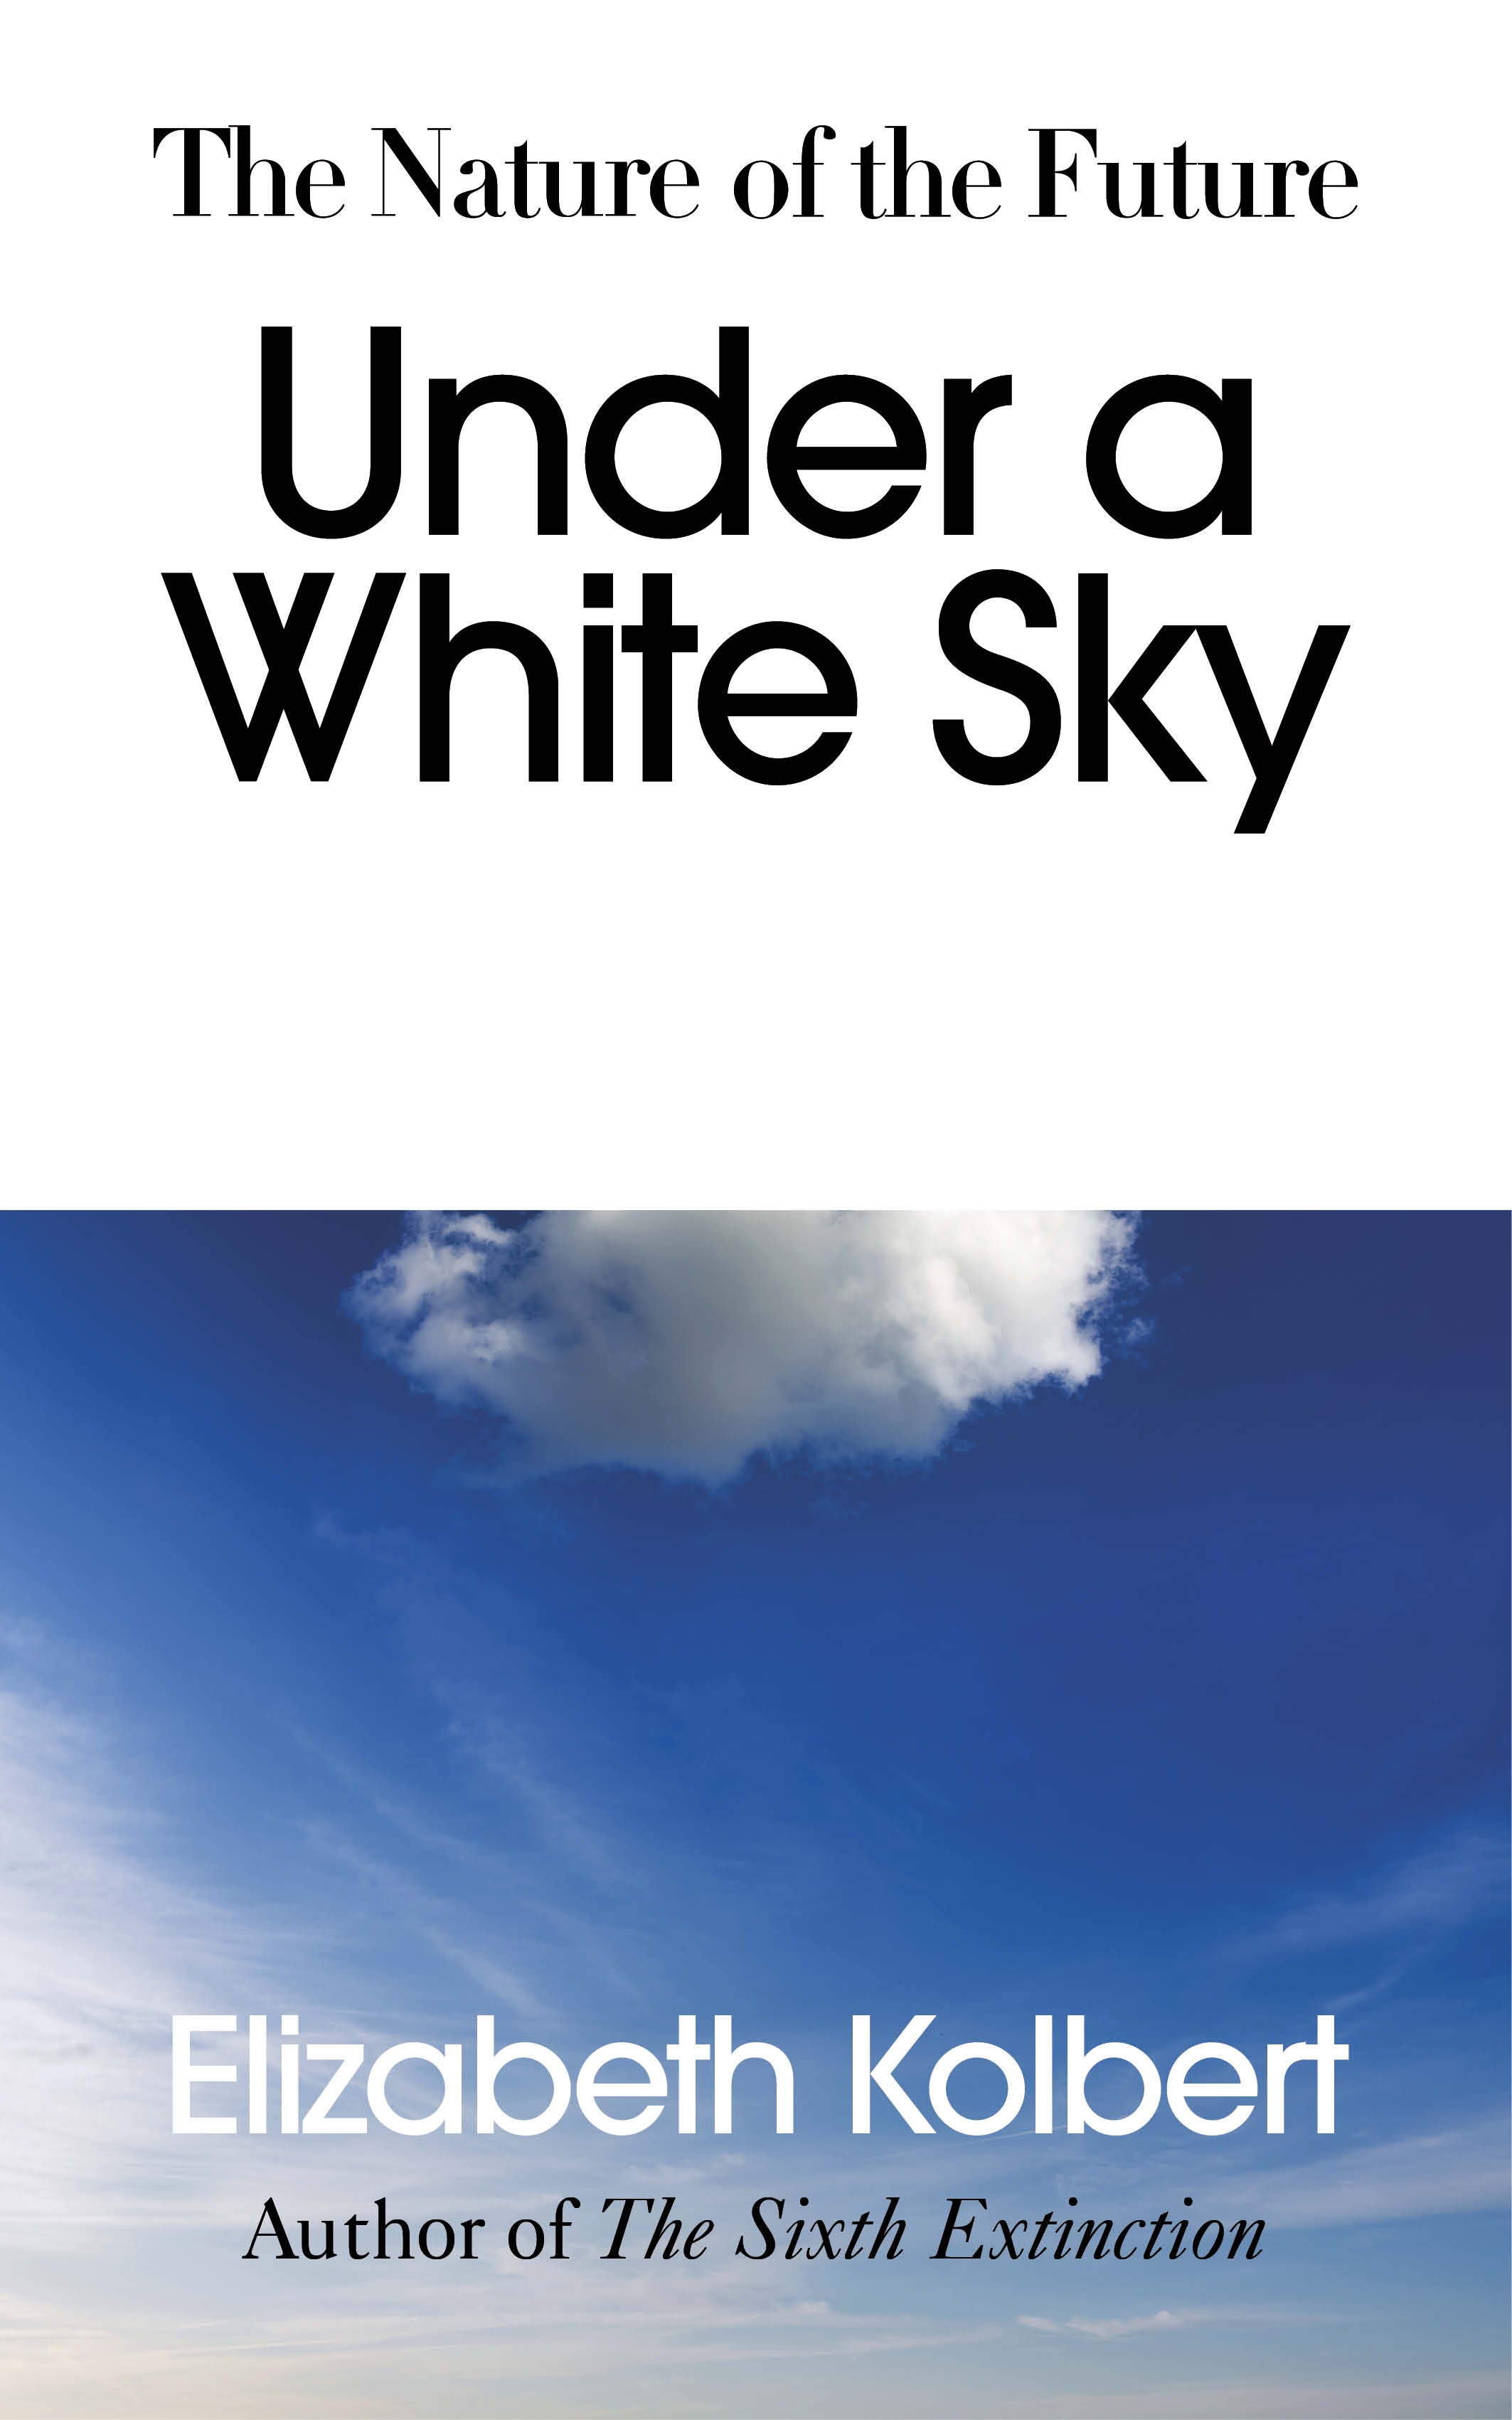 تحت سماء بيضاء طبيعة المستقبل